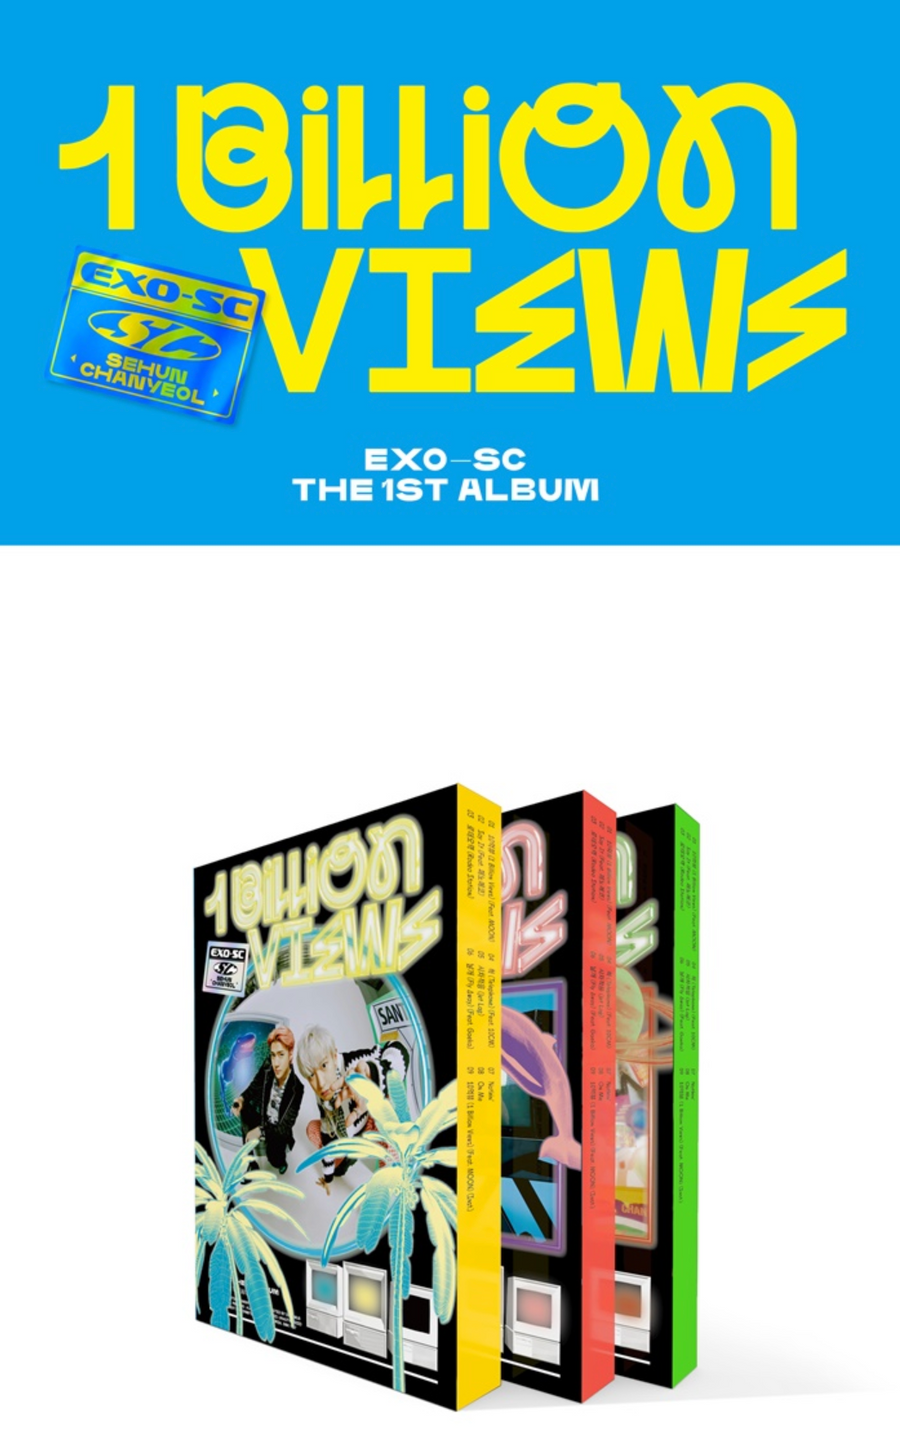 EXO-SC 1st Album - 1 Billion Views